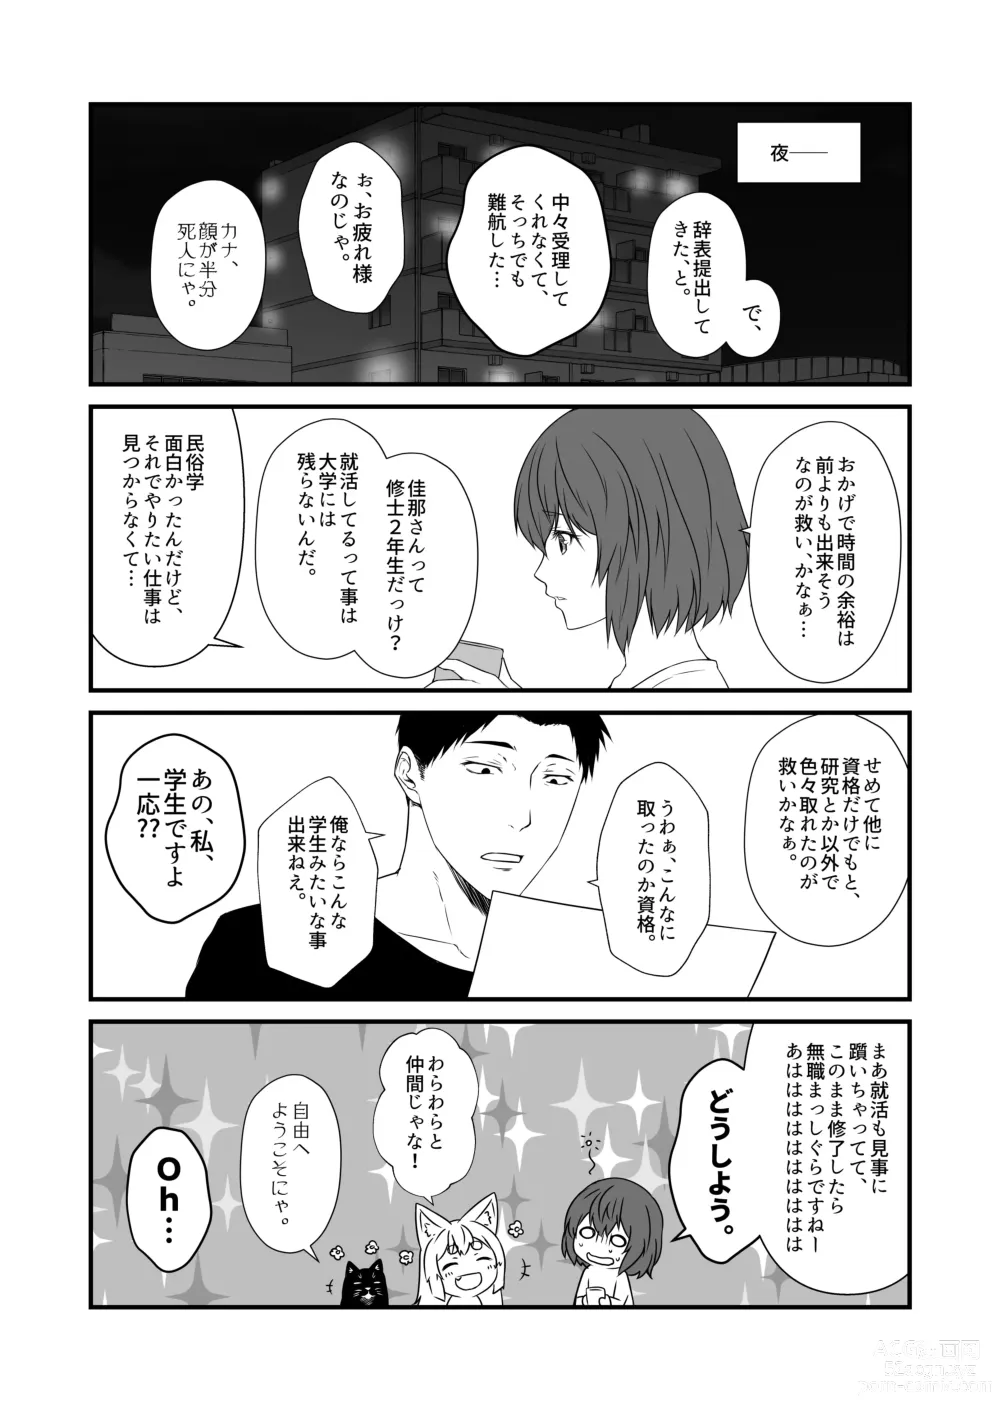 Page 5 of doujinshi Kohaku Biyori Vol. 9